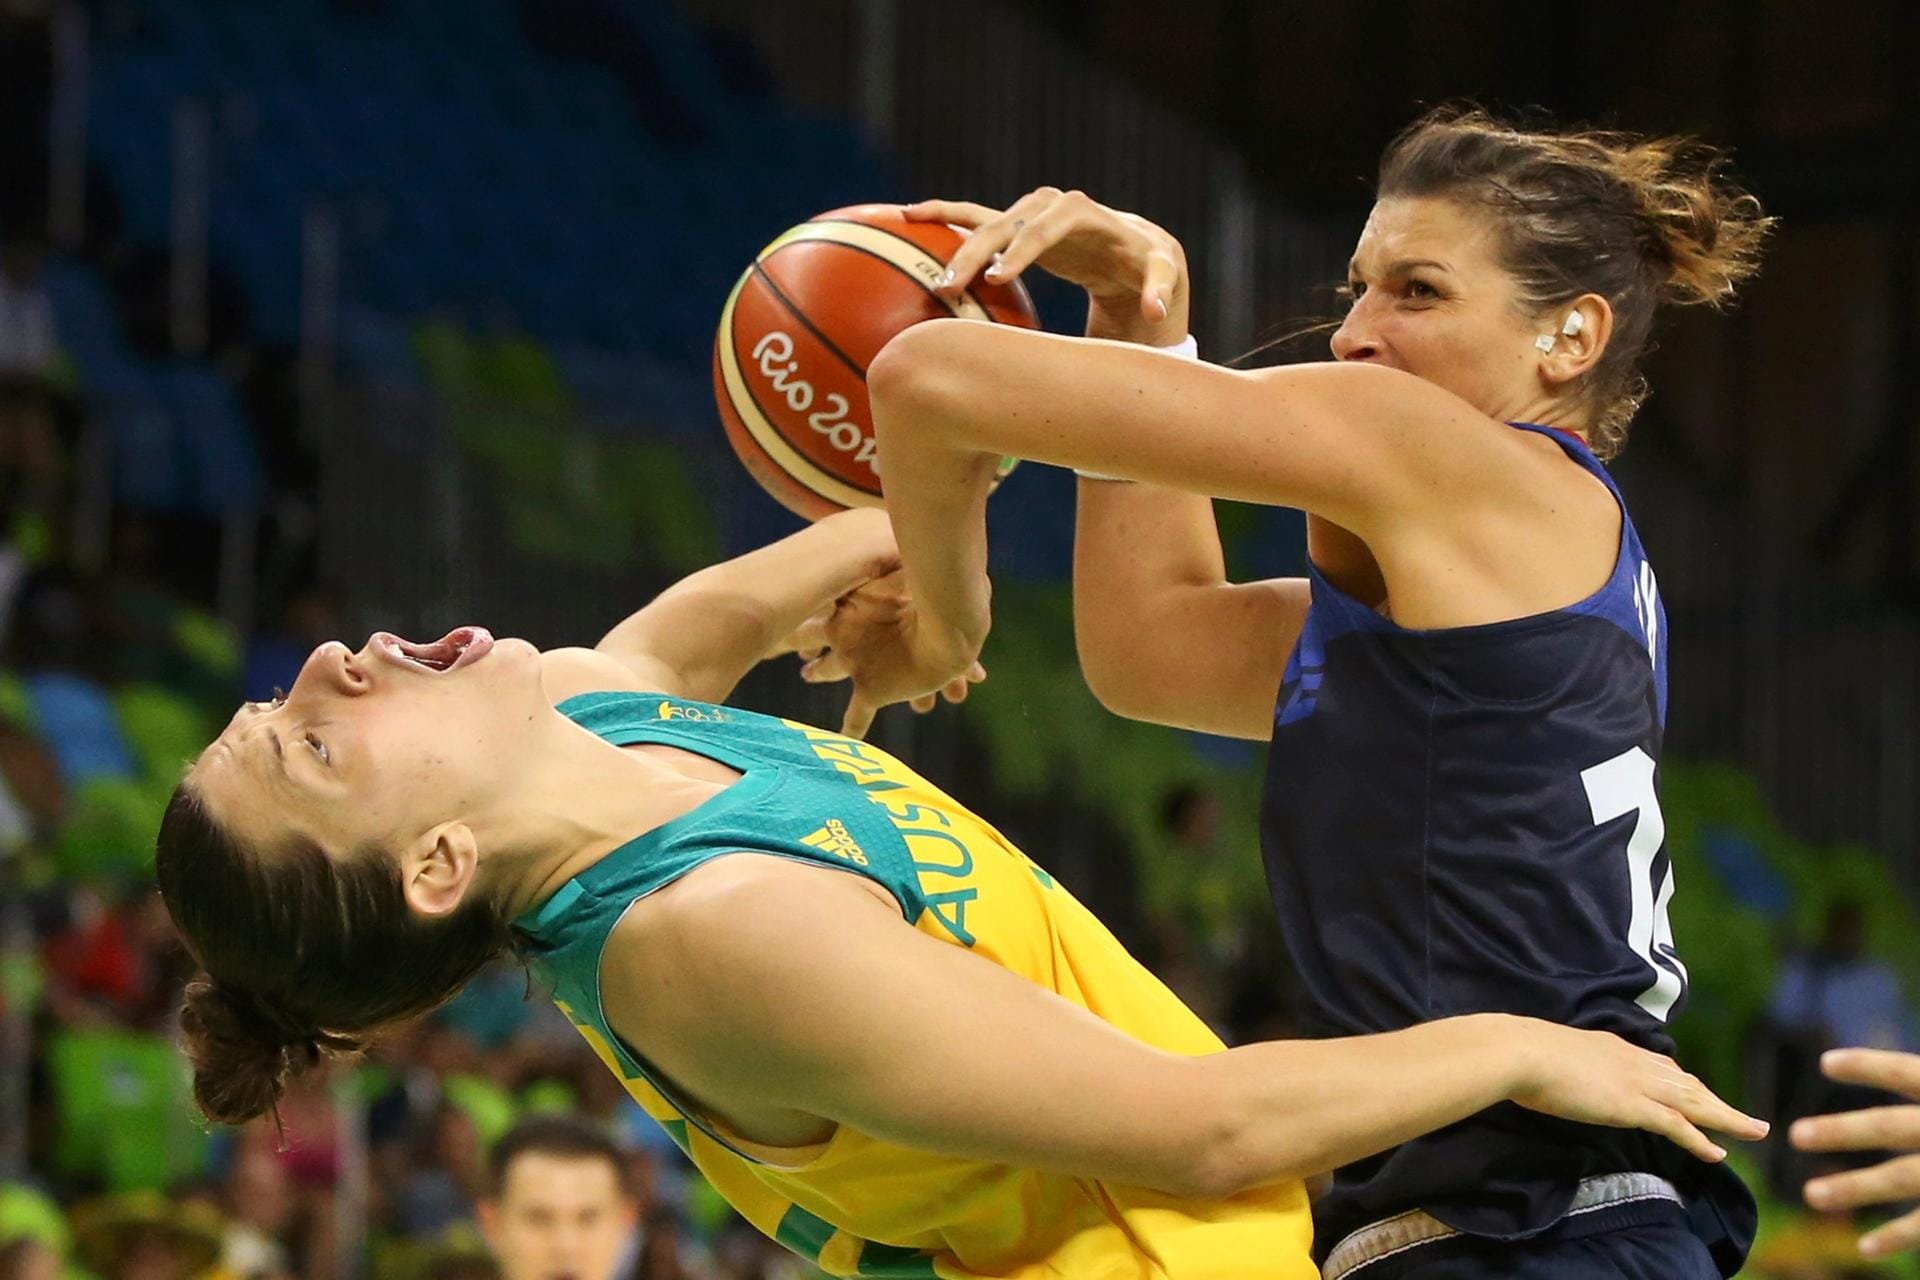 Die Französin Helena Ciak (re.) steigt beim basketball hart gegen die Australierin Marianna Tolo ein.